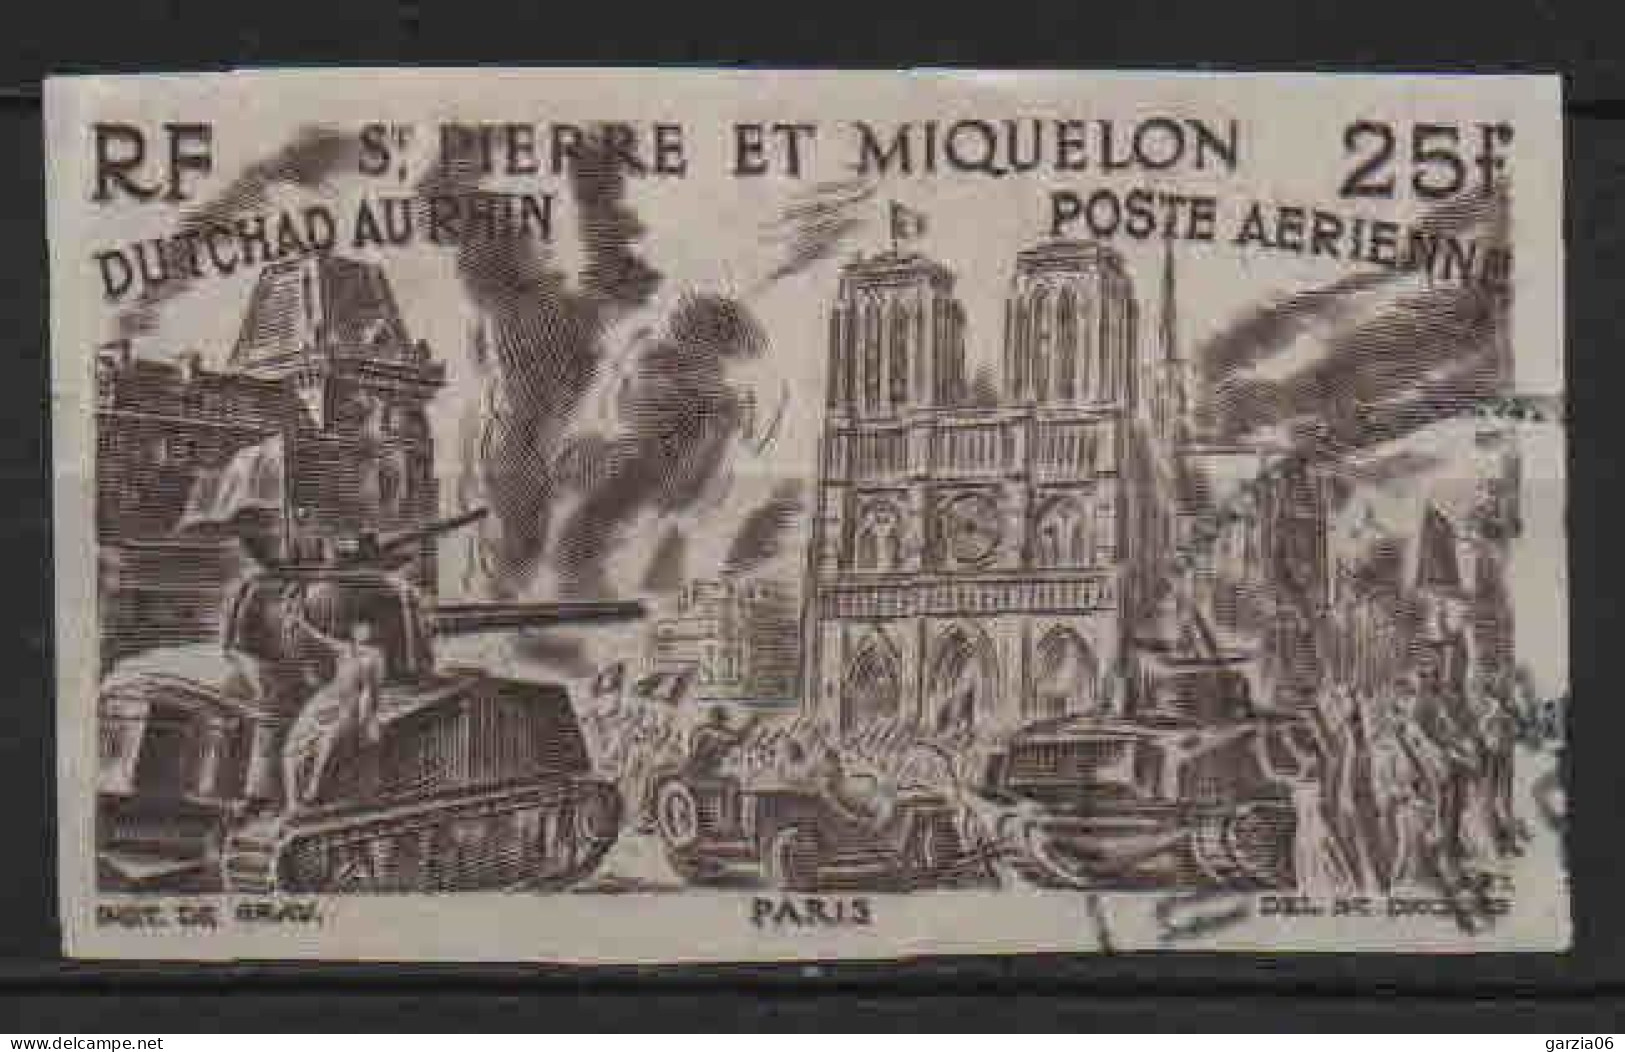 St Pierre Et Miquelon - 1956 -  Tchad Au Rhin  - Non Dentelé - PA 16 - Oblit - Used - Gebraucht